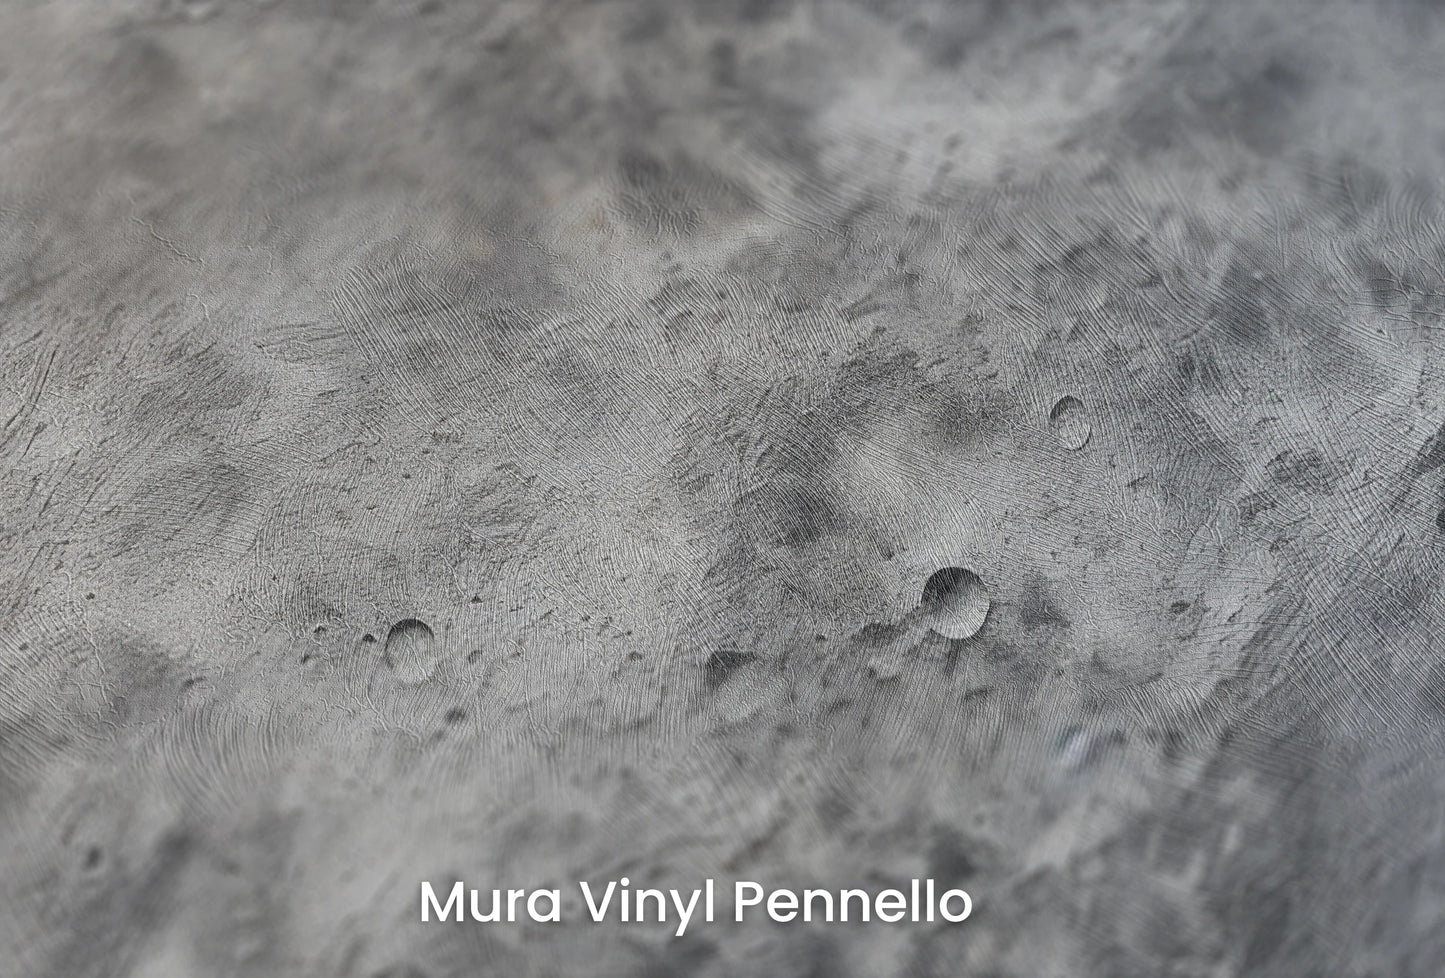 Zbliżenie na artystyczną fototapetę o nazwie Moon's Tranquility #2 na podłożu Mura Vinyl Pennello - faktura pociągnięć pędzla malarskiego.